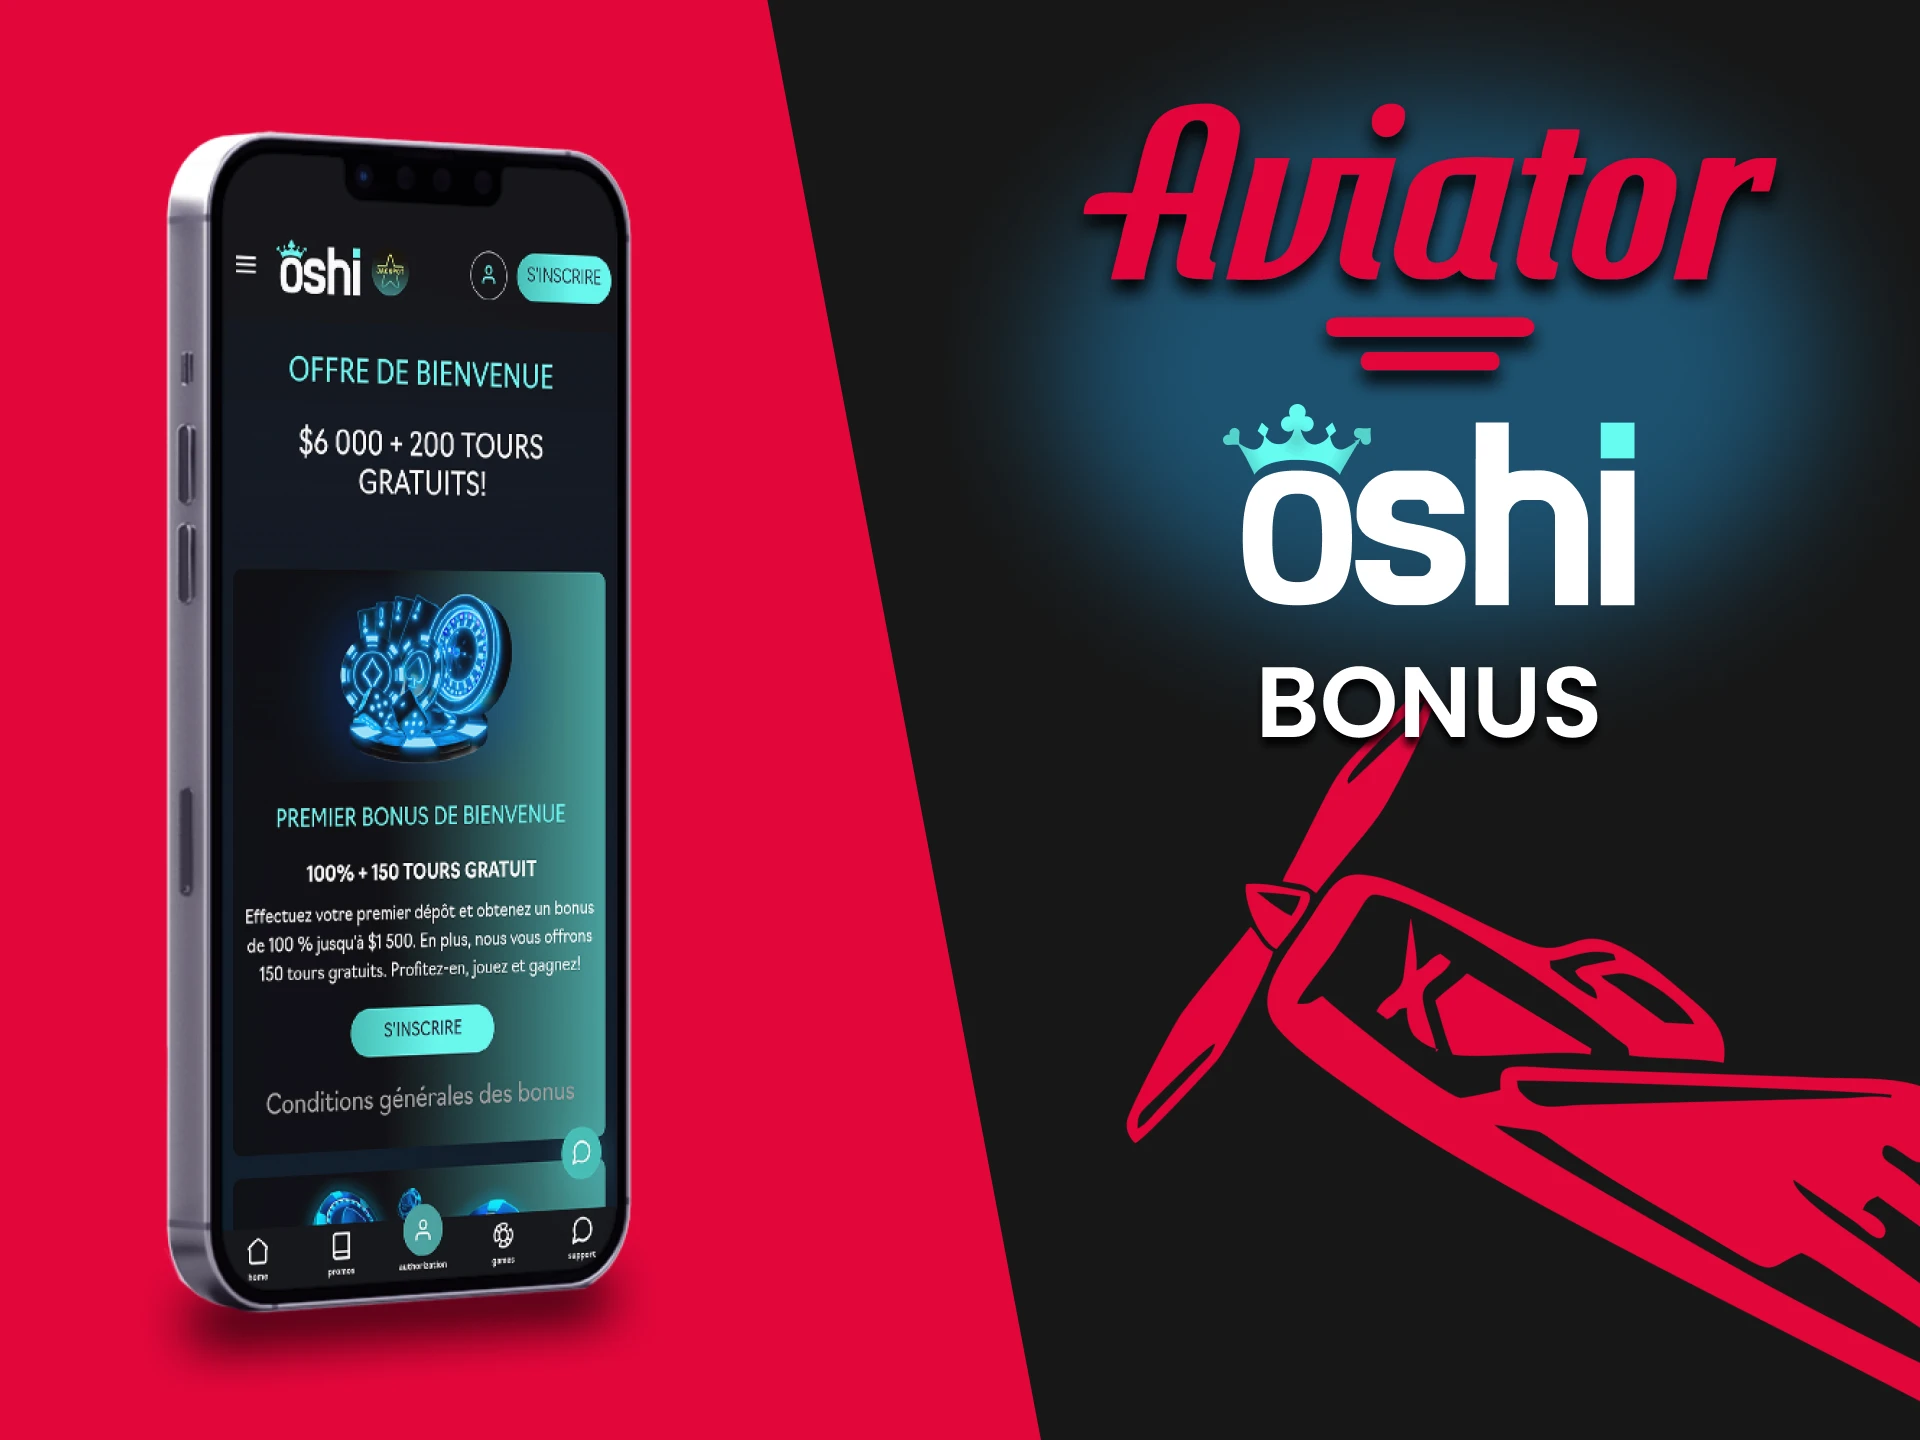 Jouez à Aviator et obtenez des bonus de l'application Oshi Casino.